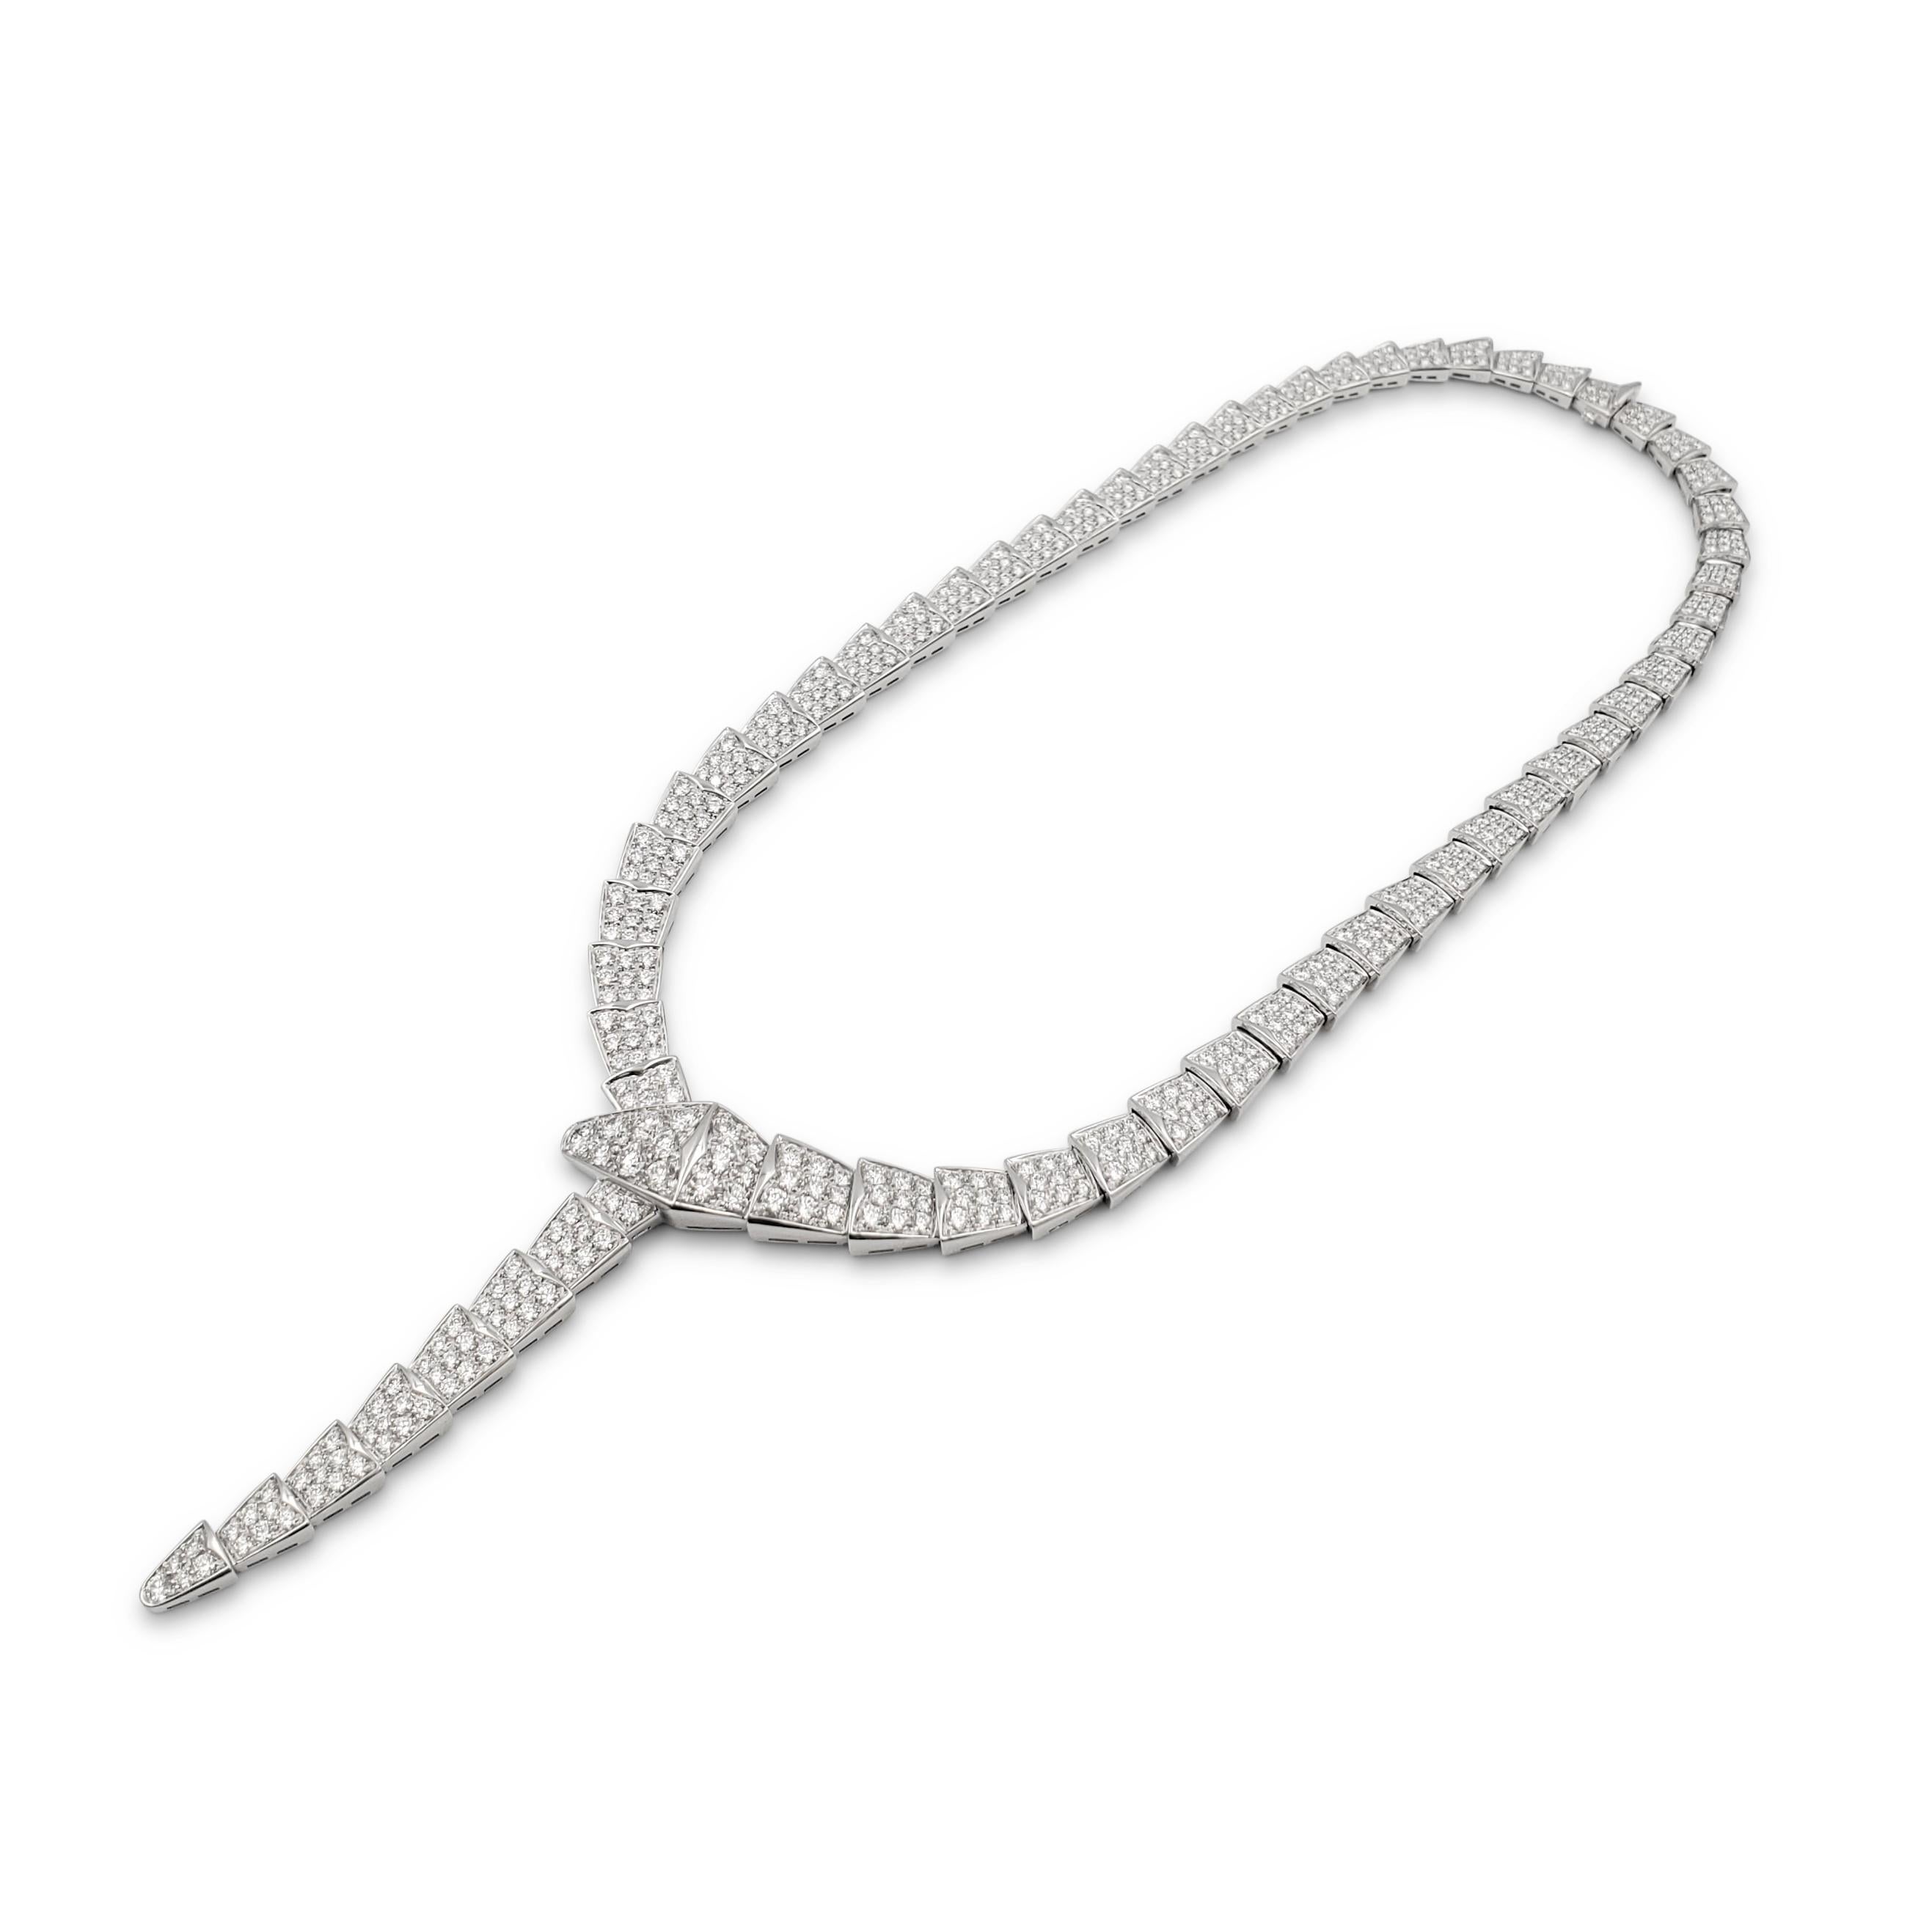 bvlgari serpenti viper necklace in white gold with diamonds